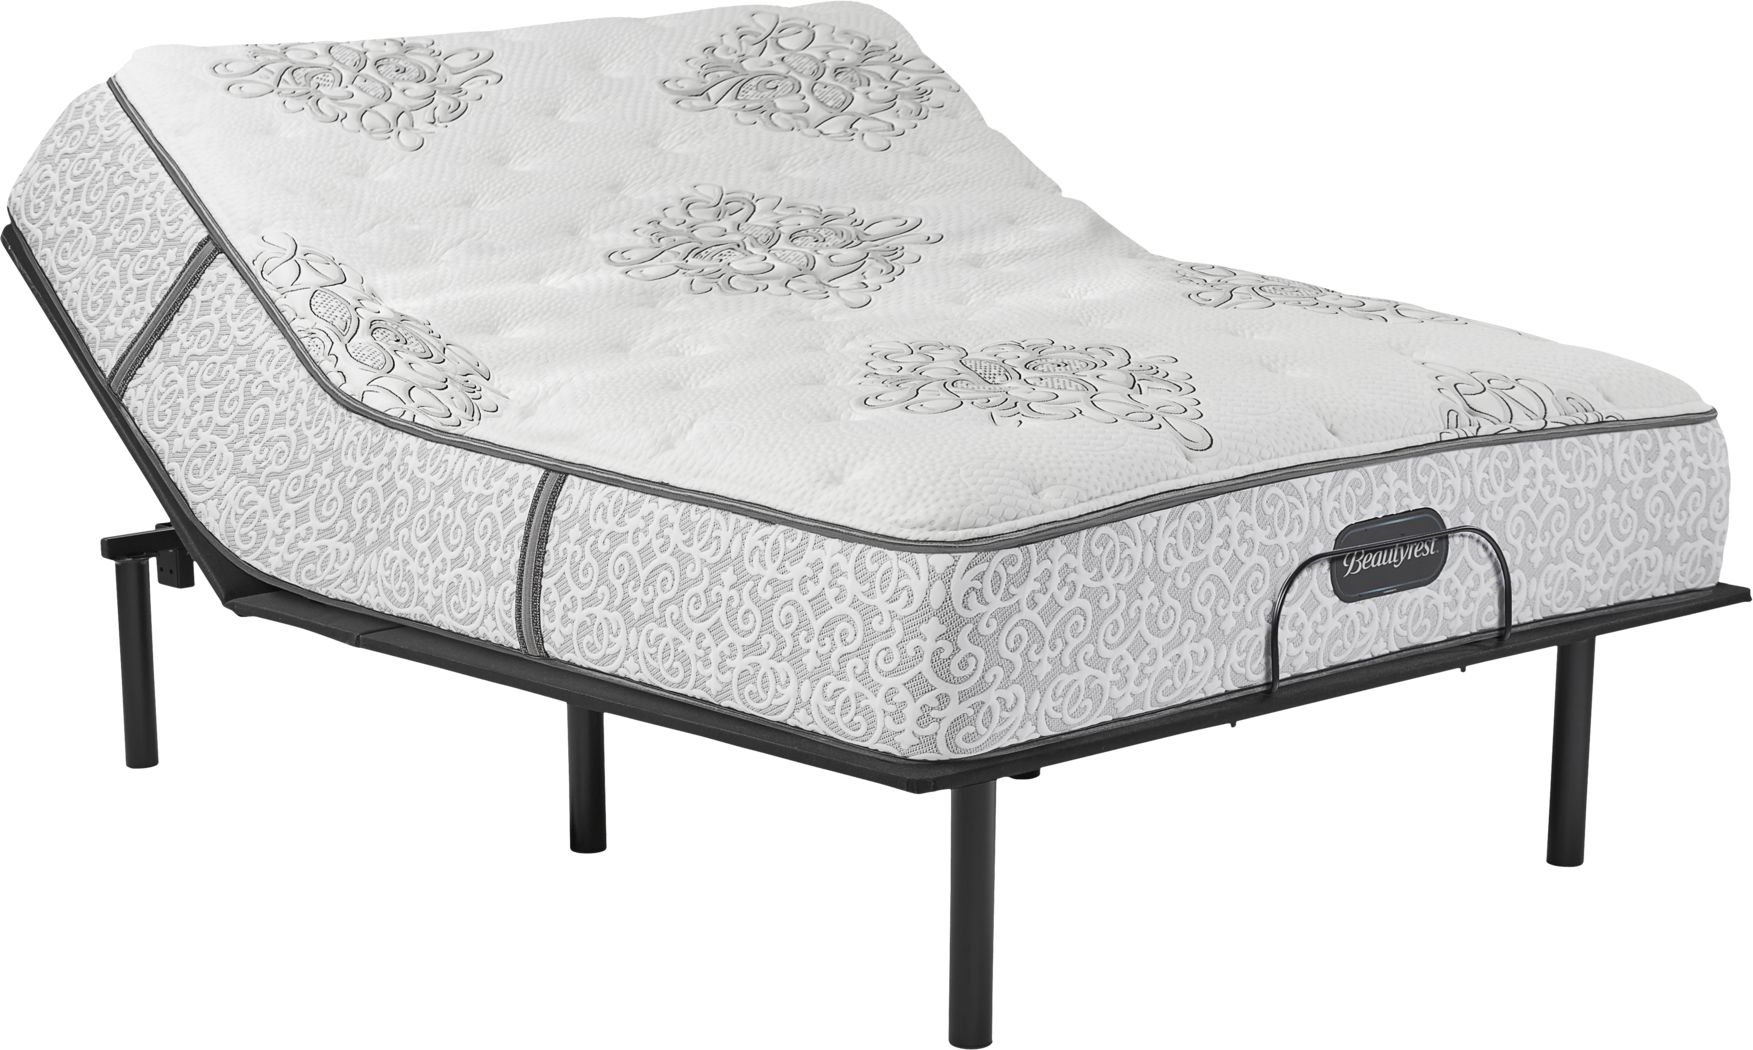 legend mcfarland 15.3 firm mattress